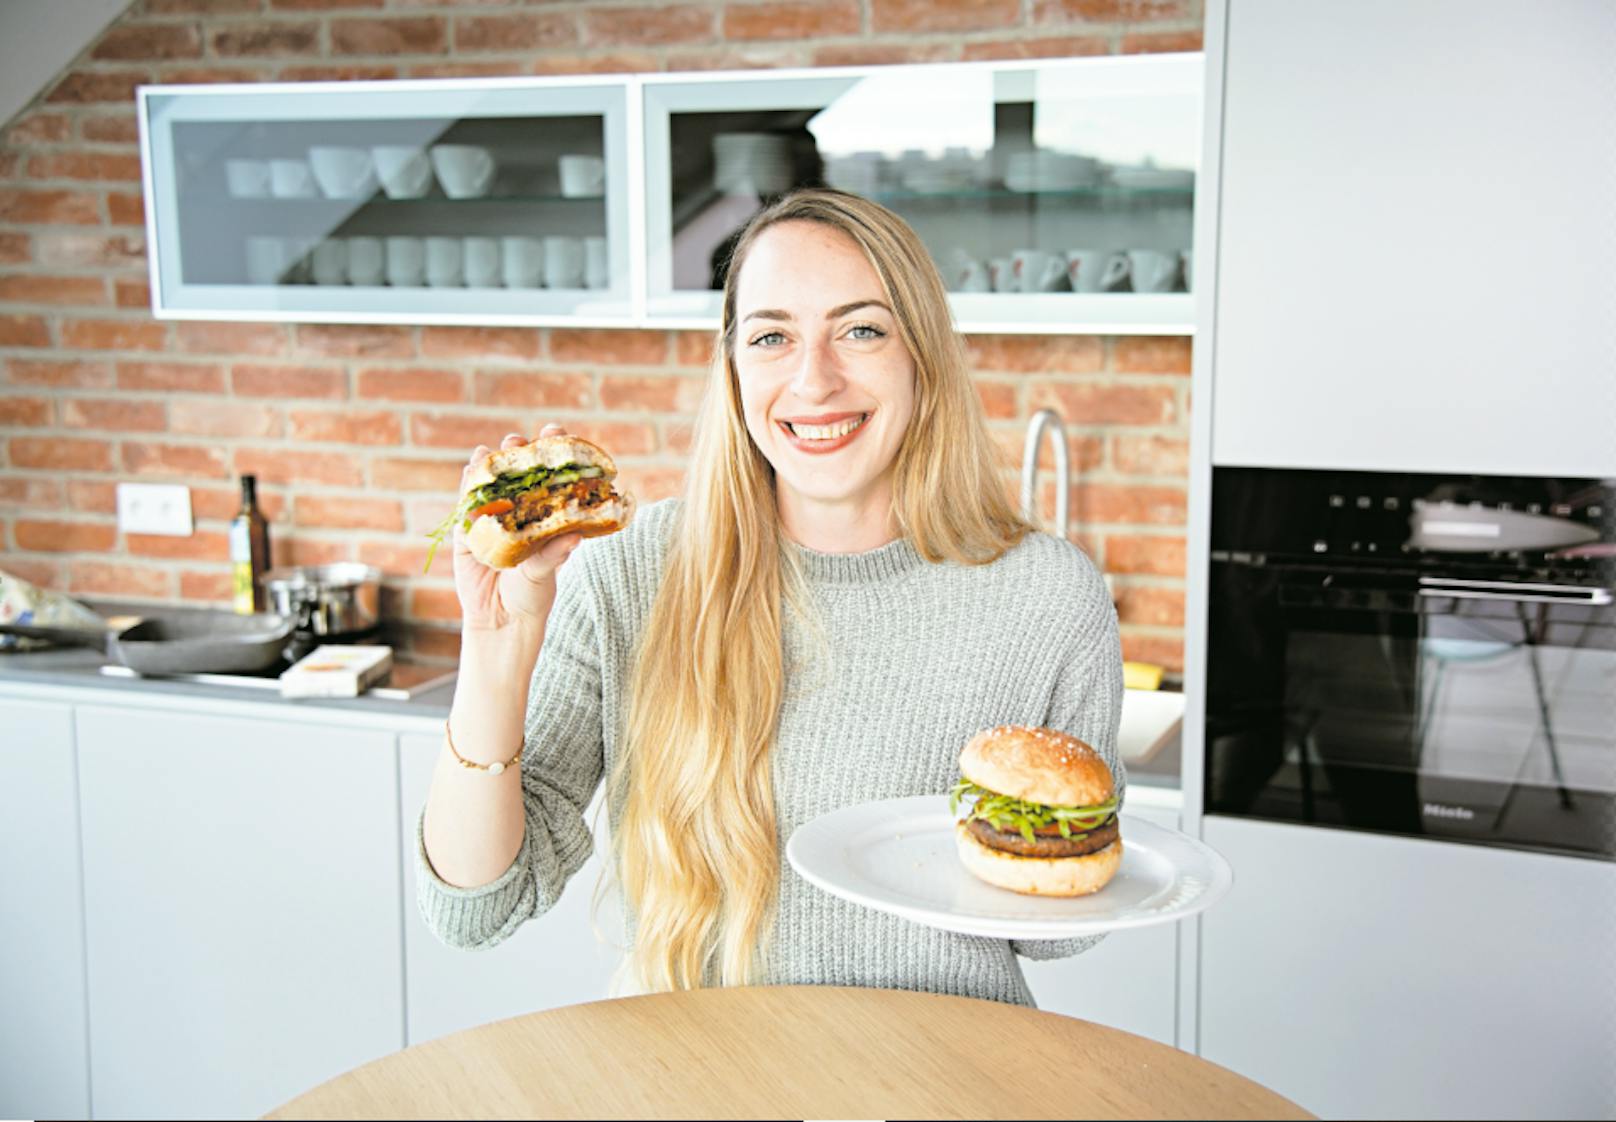 "Heute"-Redakteurin Verena Richter hat den "Eat for Future Burger getestet. Den gibt es jetzt bei 800 Billa und Billa Plus Märkten zu kaufen.